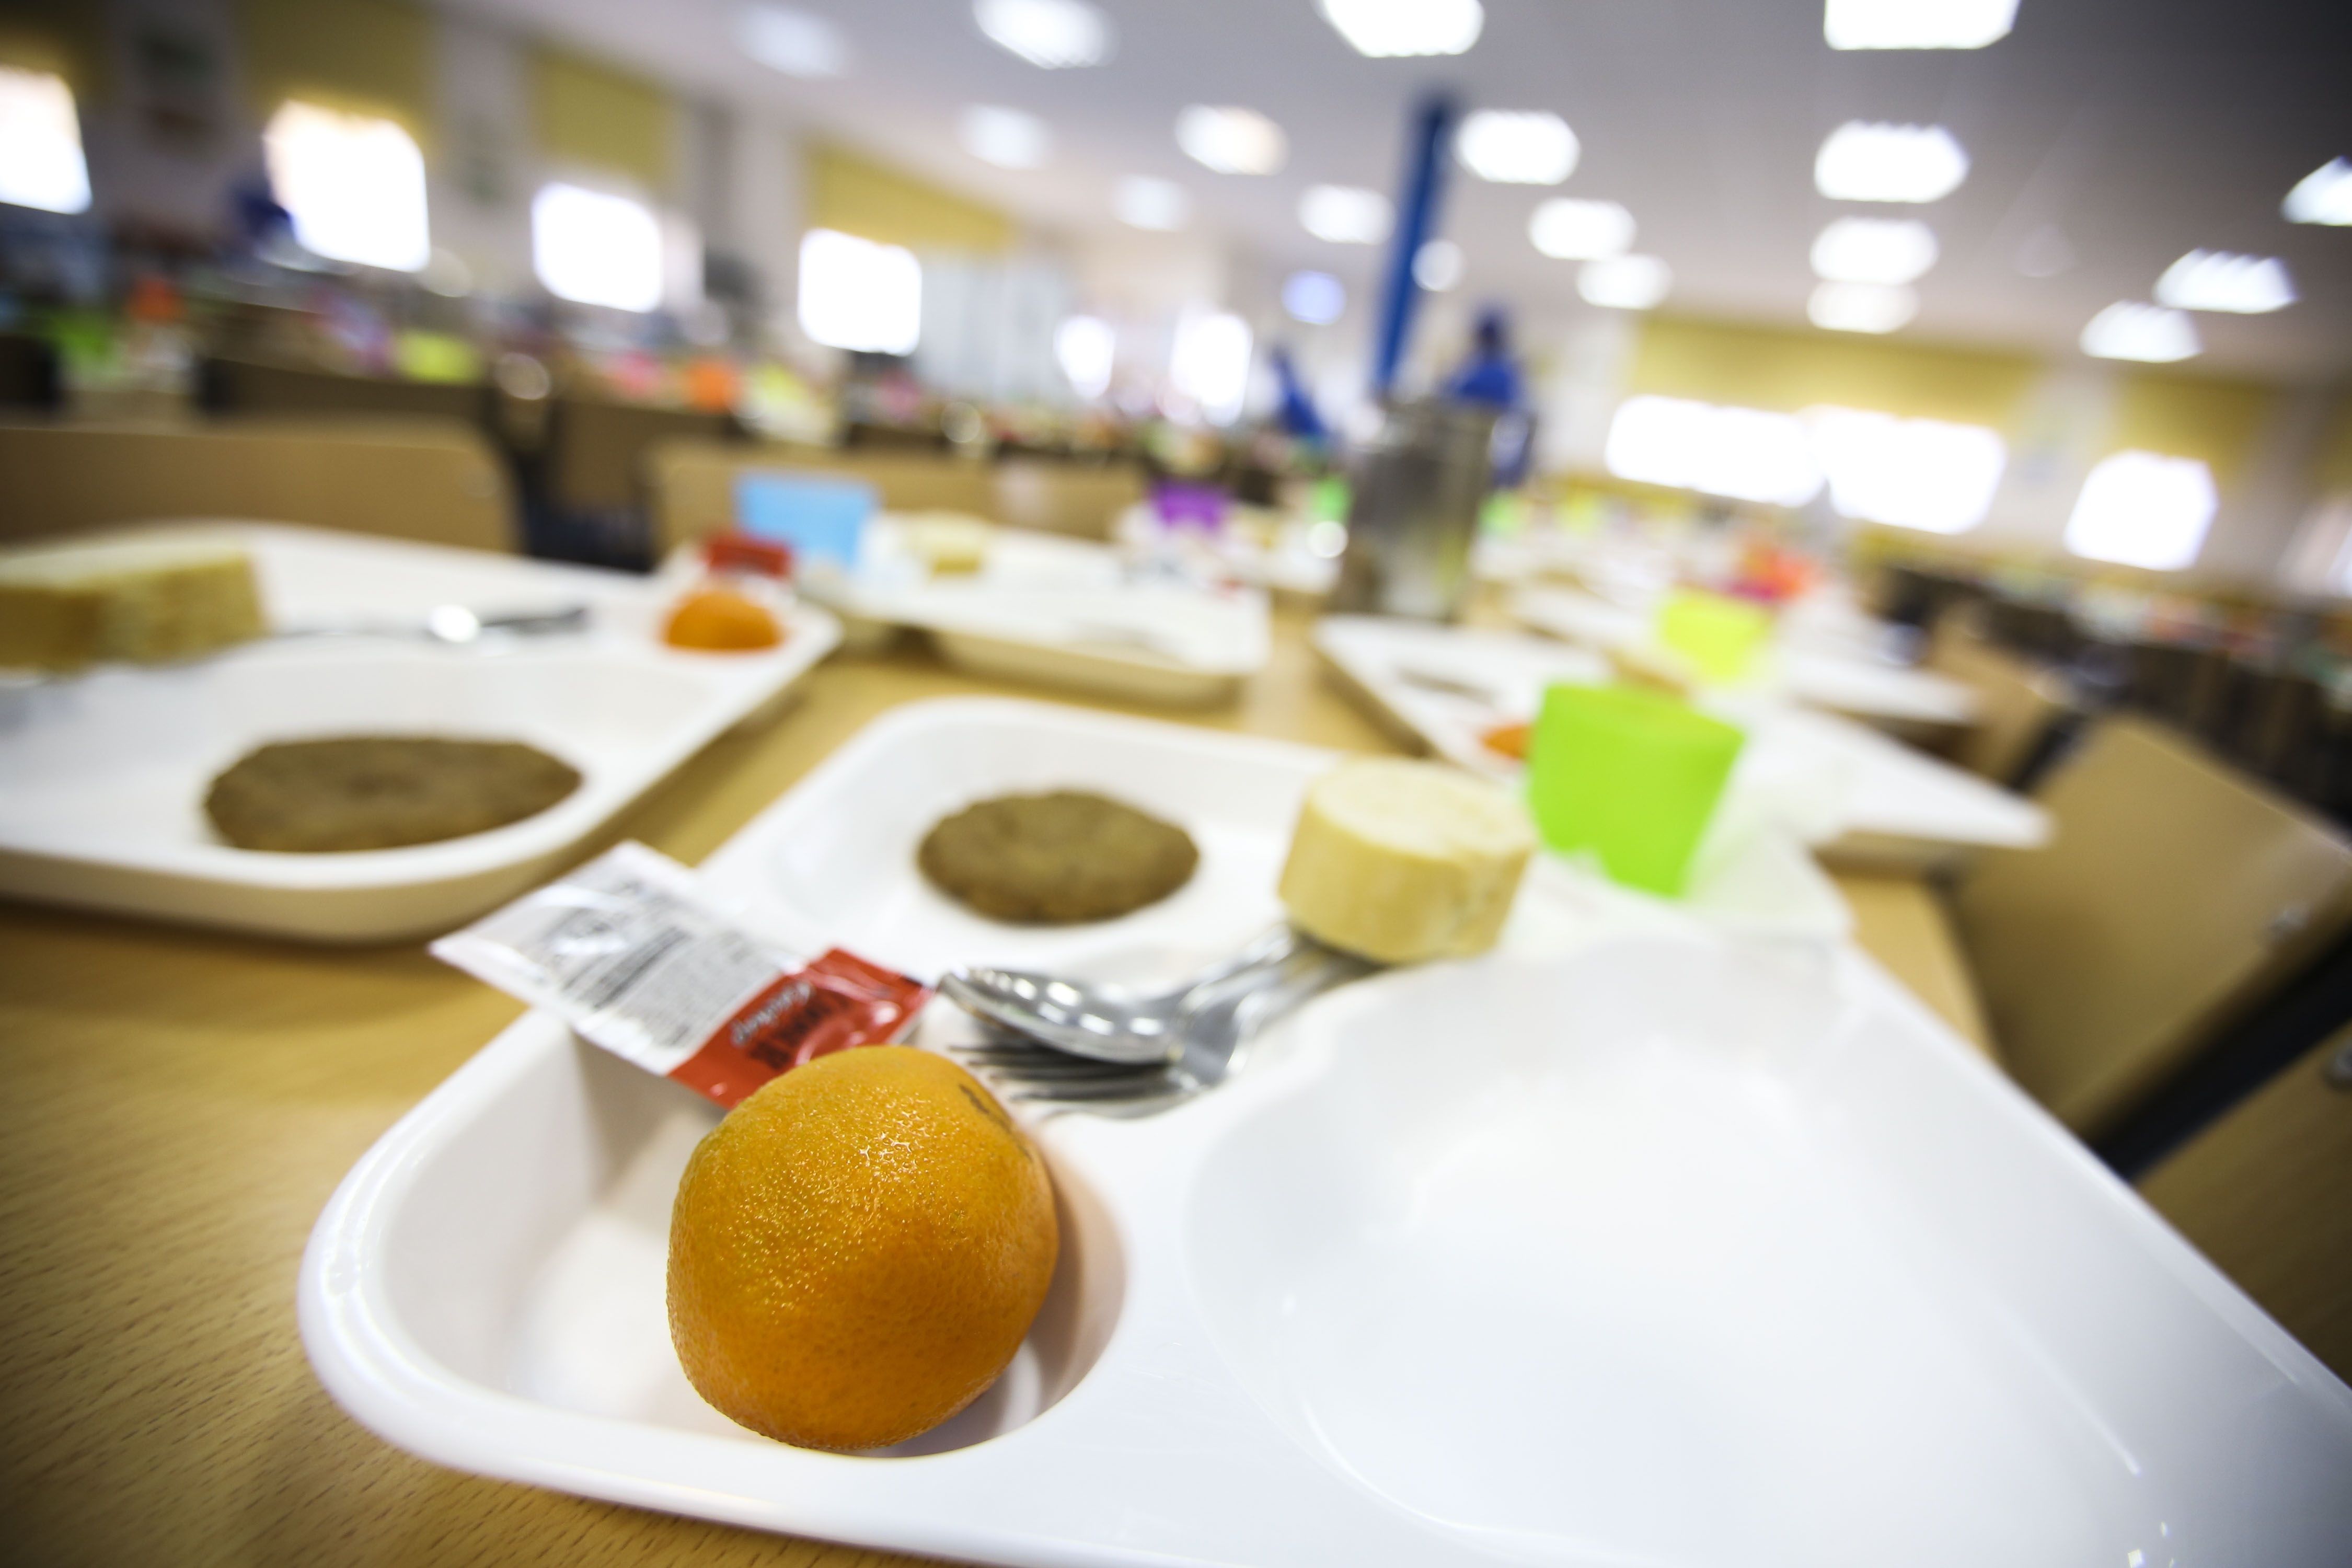 La inflación deja desiertos varios concursos para dar comidas en centros de mayores: "No compensa"